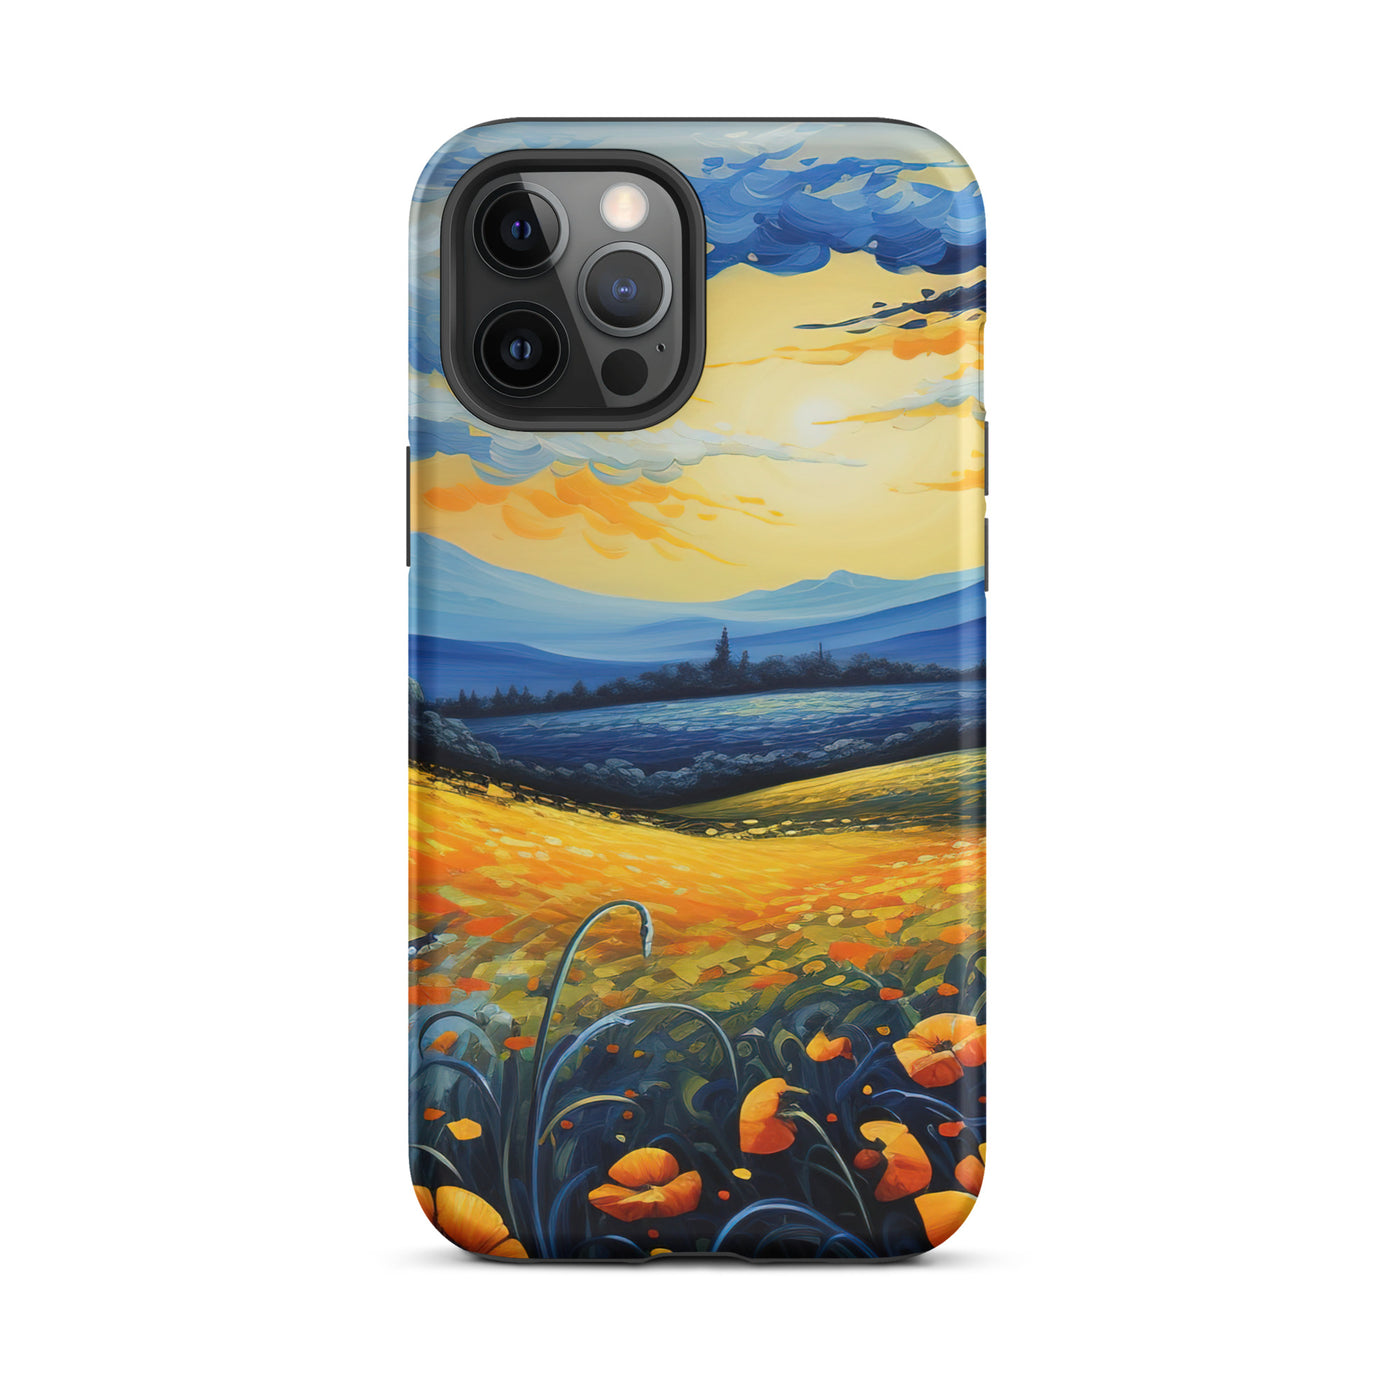 Berglandschaft mit schönen gelben Blumen - Landschaftsmalerei - iPhone Schutzhülle (robust) berge xxx iPhone 12 Pro Max